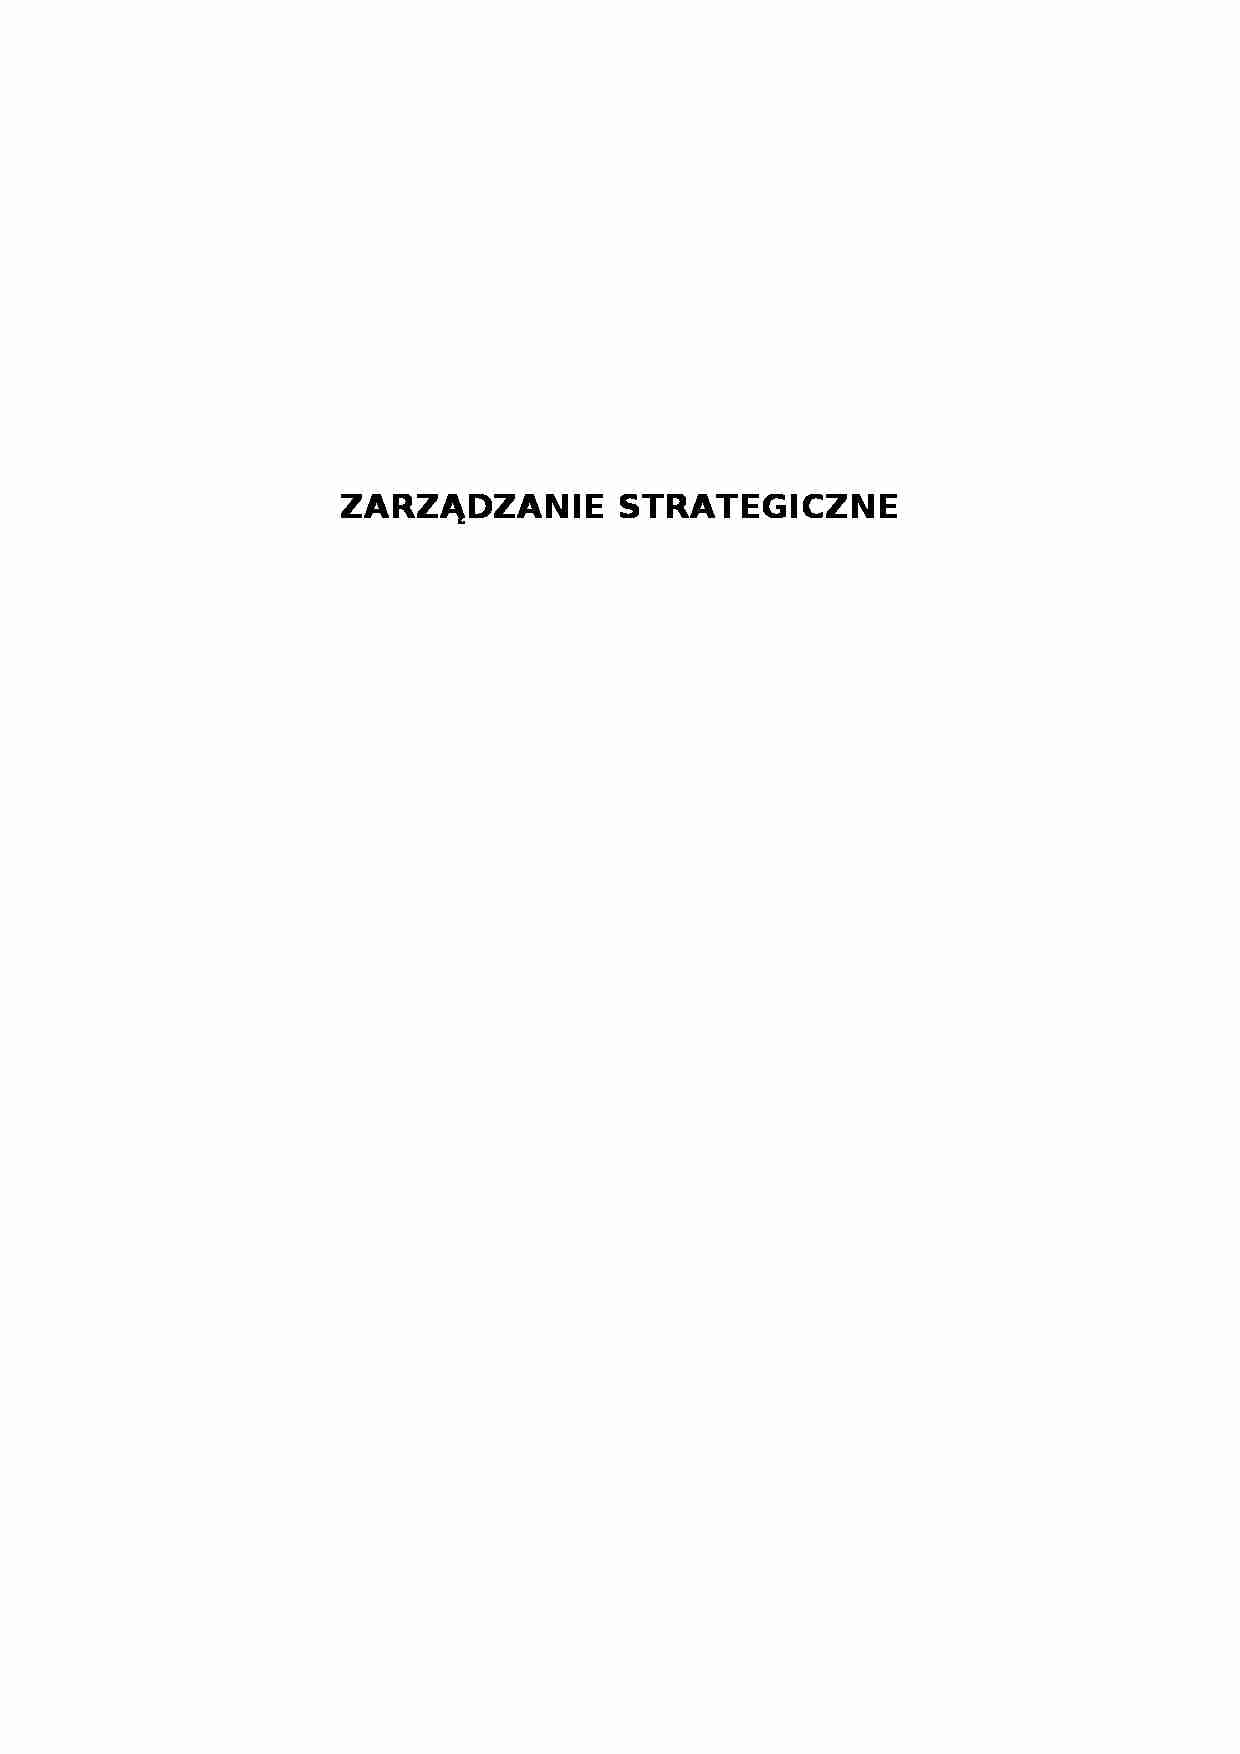 Zarządzanie strategiczne (20 stron).doc - strona 1